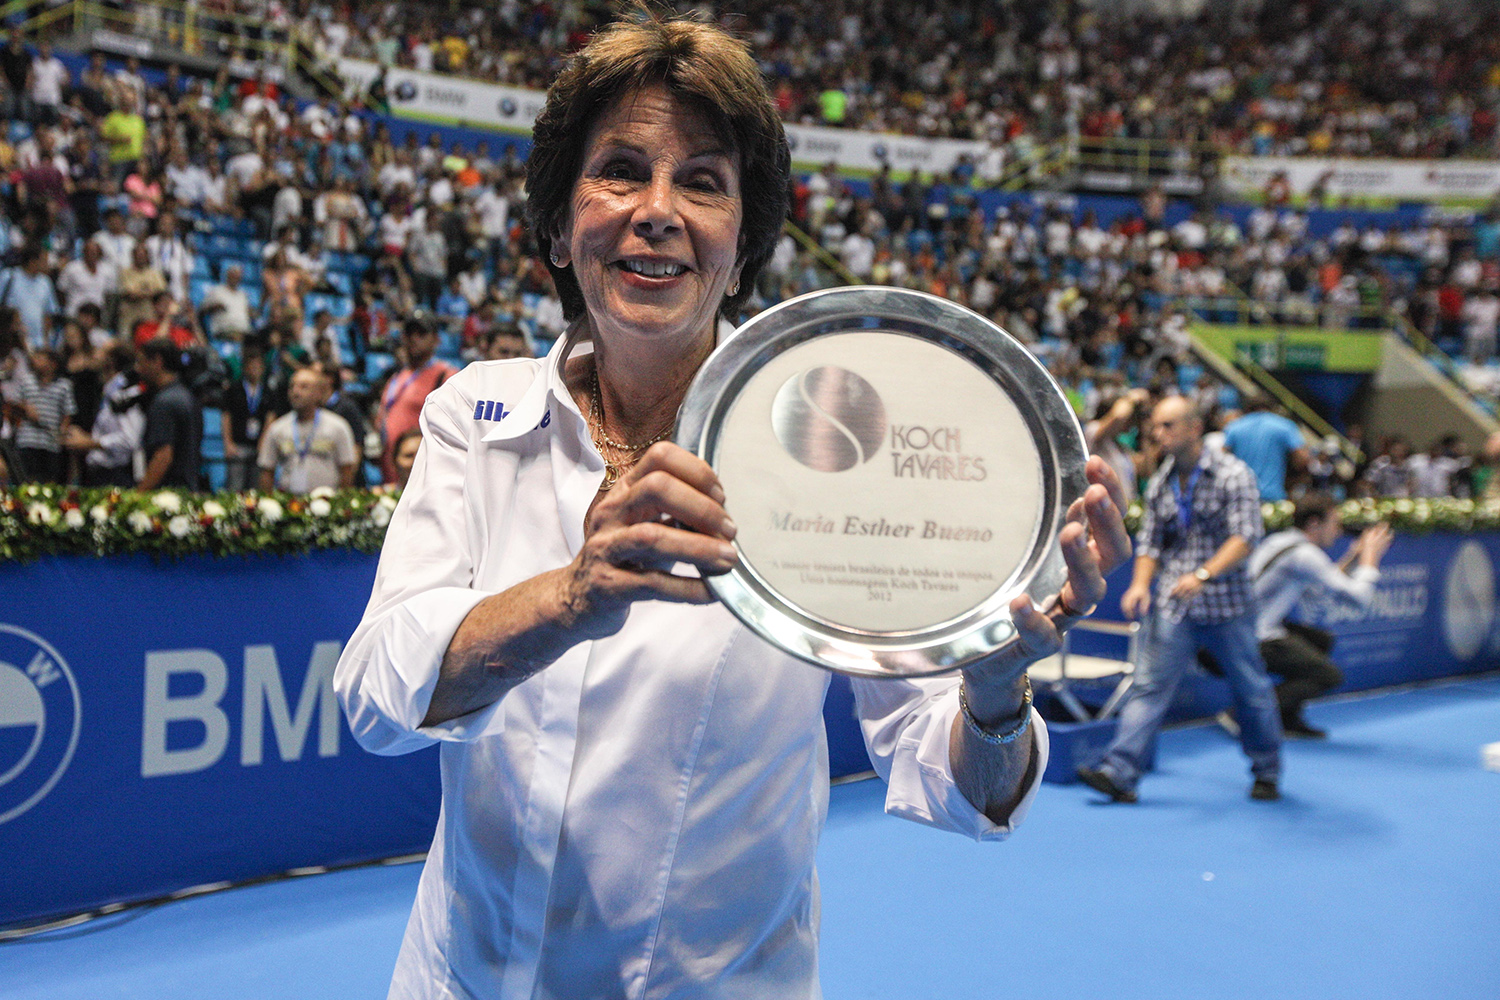 Melhor tenista da história do Brasil: quem é e por que merece esse título?  - Celular1